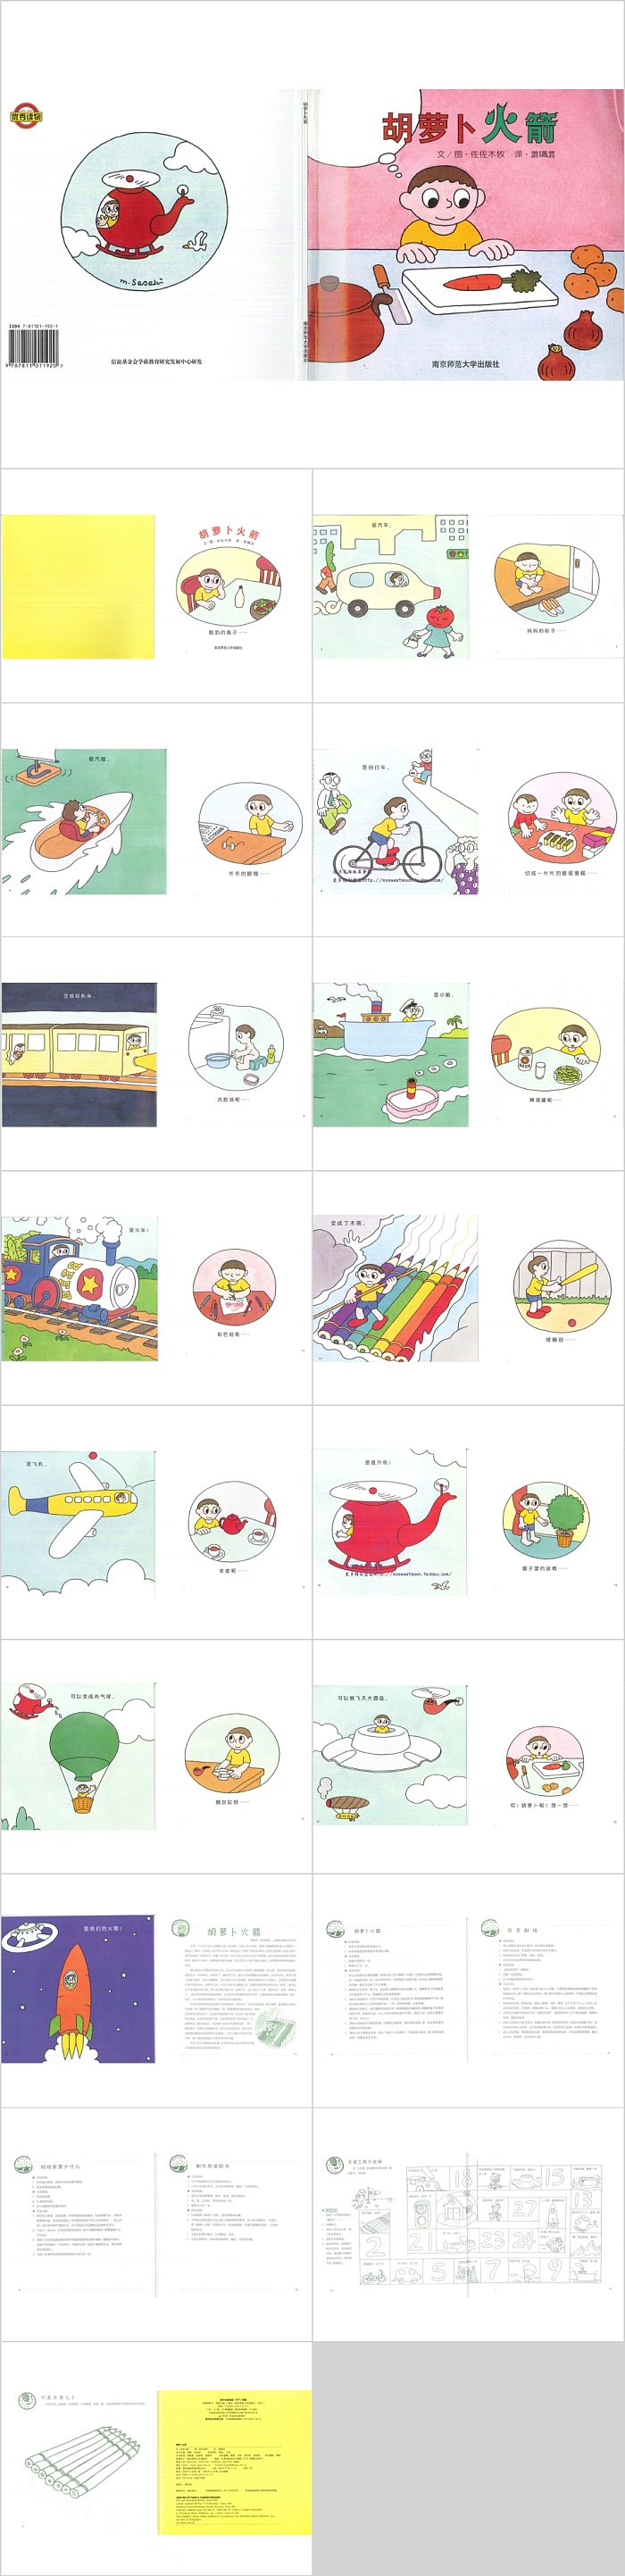 胡萝卜火箭幼儿园绘本故事教育课件PPT模板